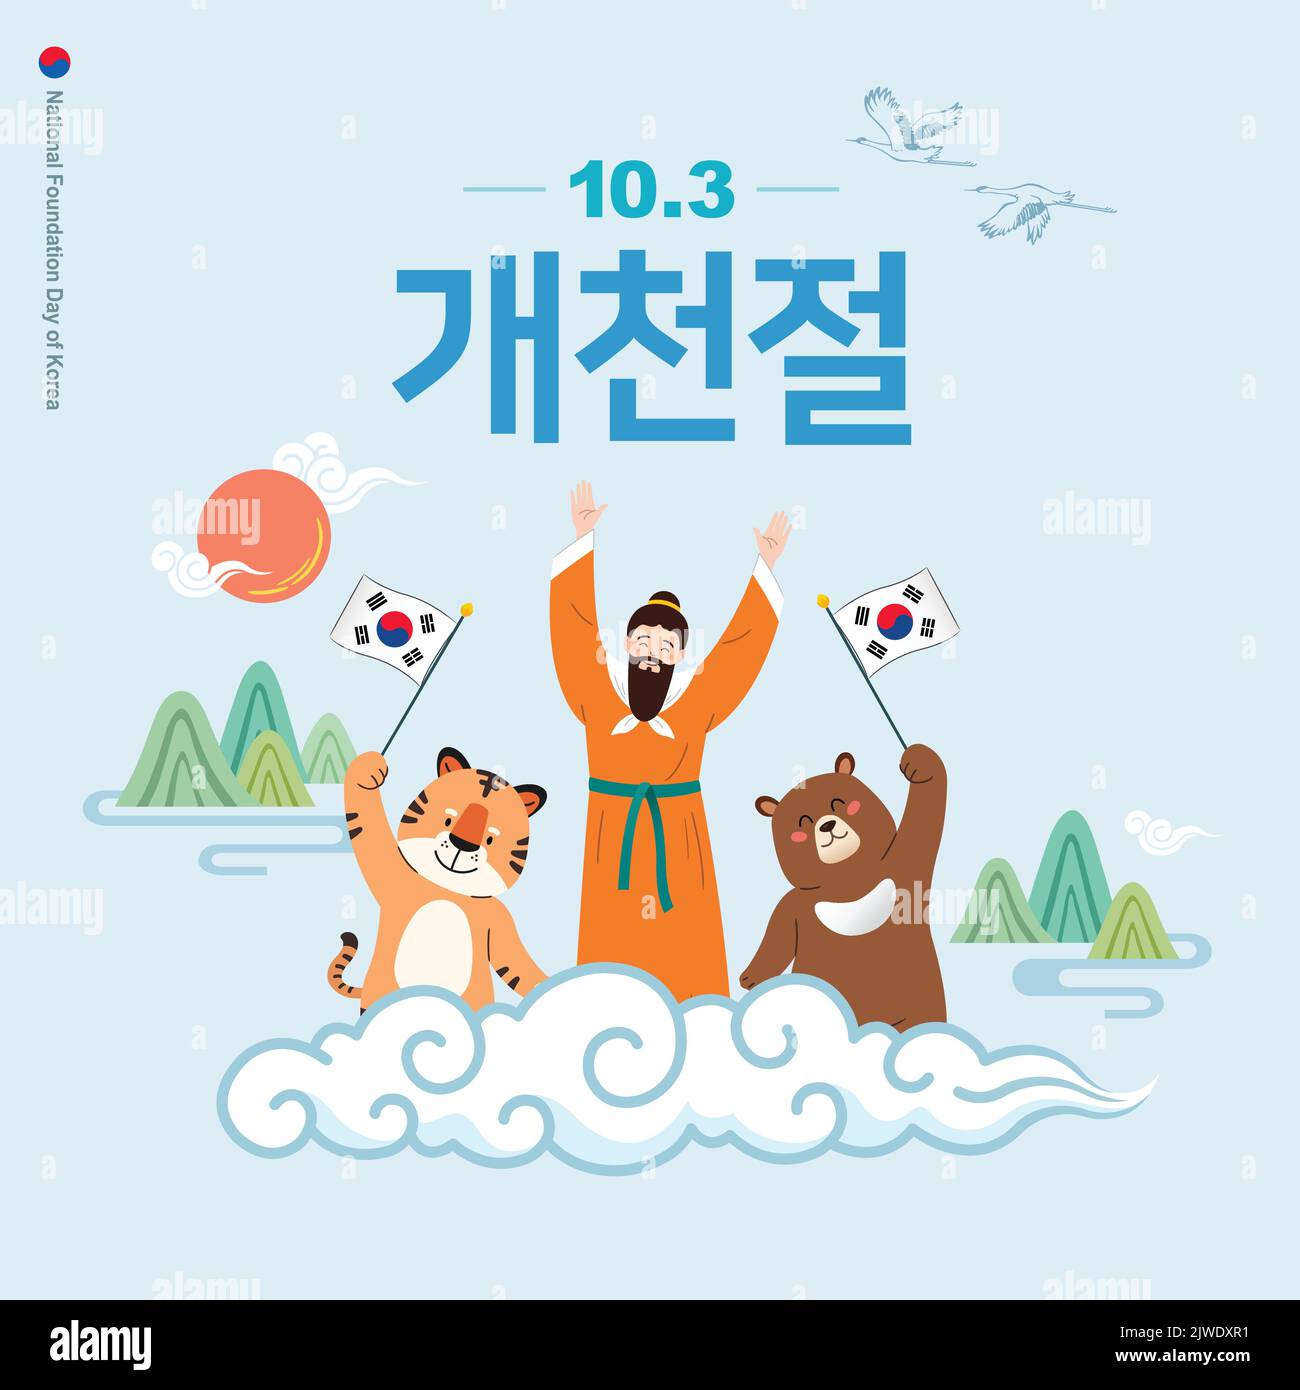 Dangun Opa, ein Bär und ein Tiger feiern den Tag der Korea National Foundation. Dangun Mythology Event Design. Stock Vektor